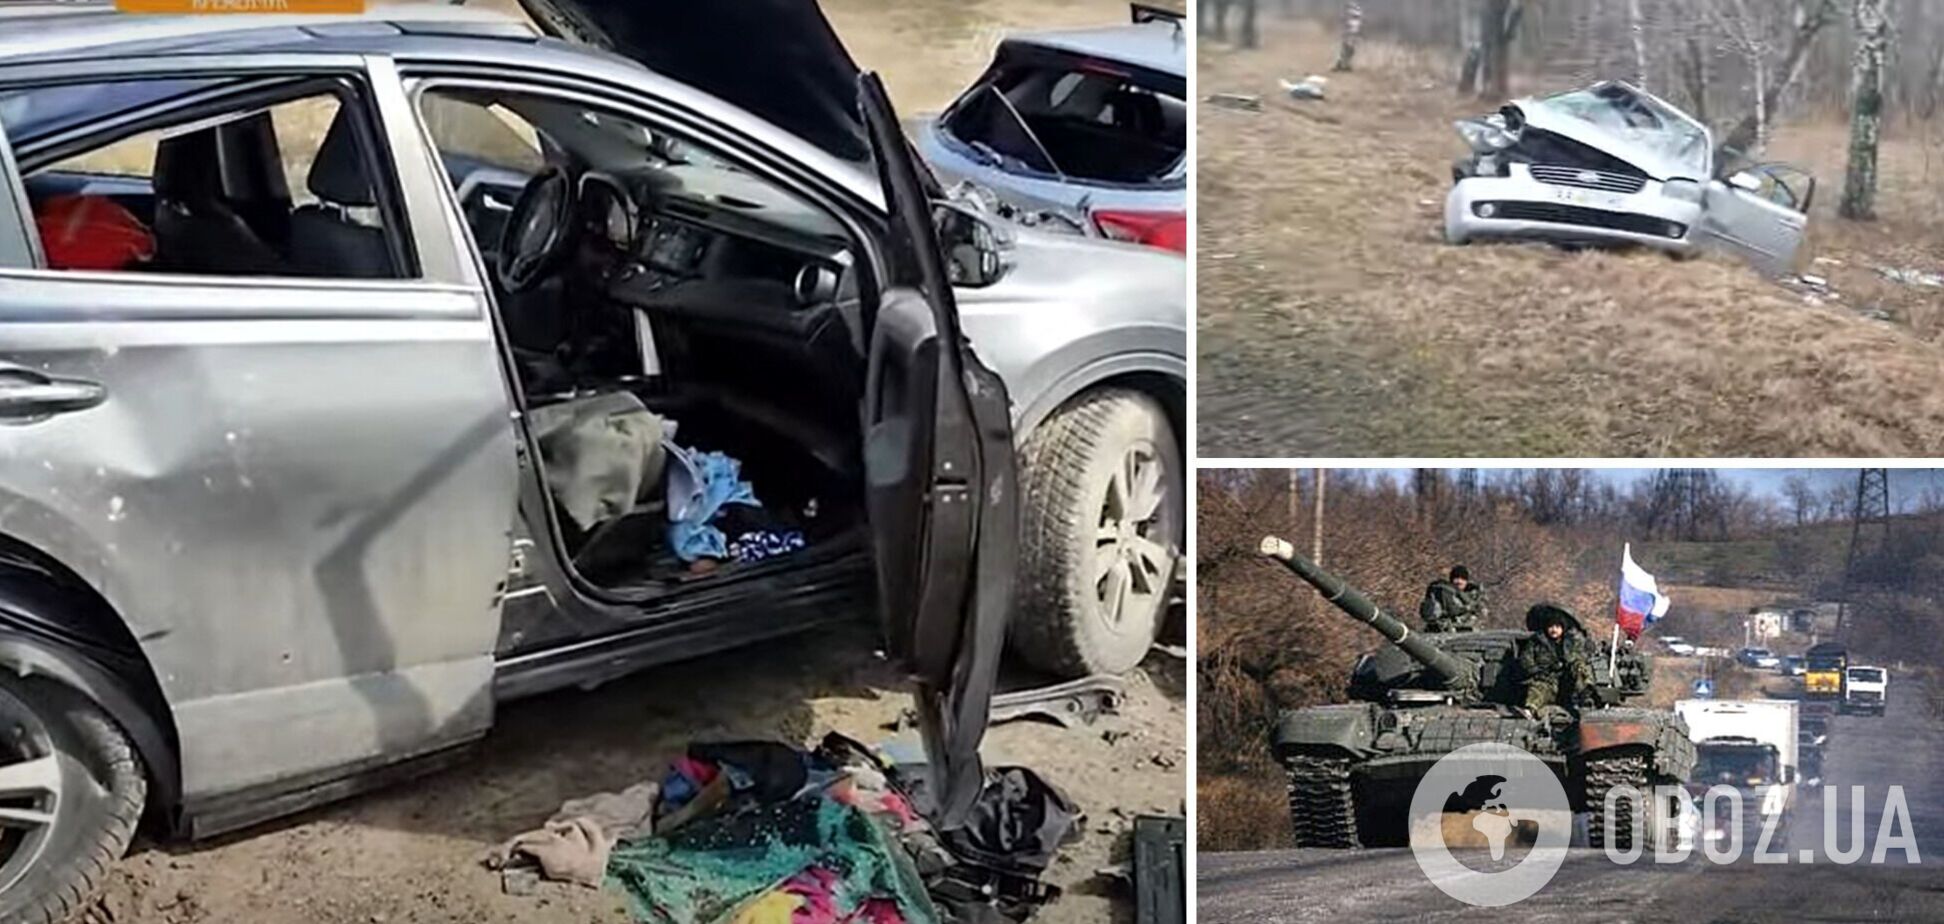 Оккупанты расстреливали авто на Житомирской трассе, тела людей лежат на земле: одного из погибших россияне переехали на БМП. Видео 18+